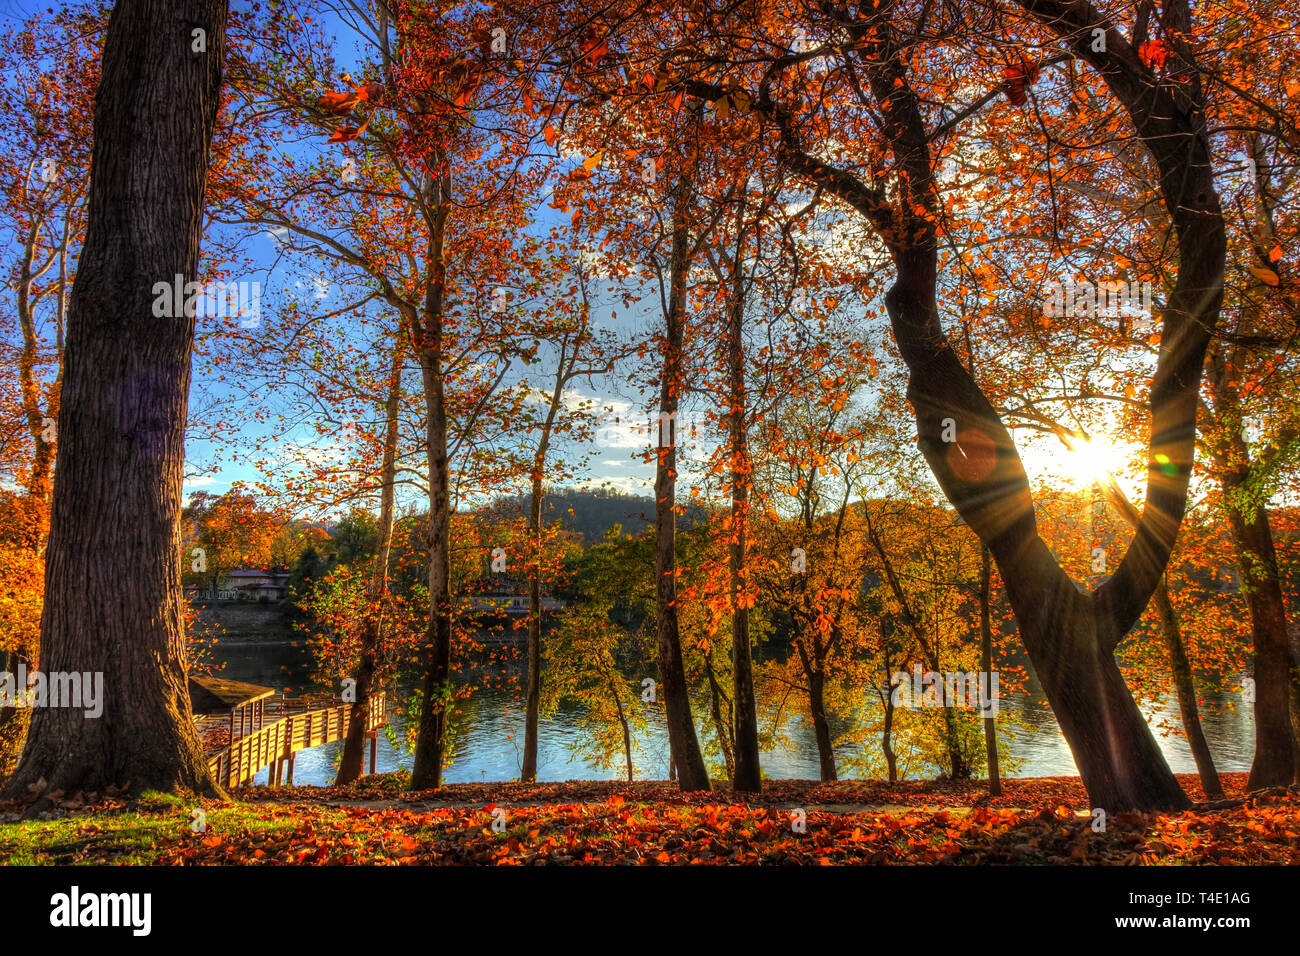 Charleston, Virginia del Oeste, en el otoño | Daniel Boone Park. La foto muestra la belleza de los colores del otoño de los árboles junto al río Kanawha Foto de stock